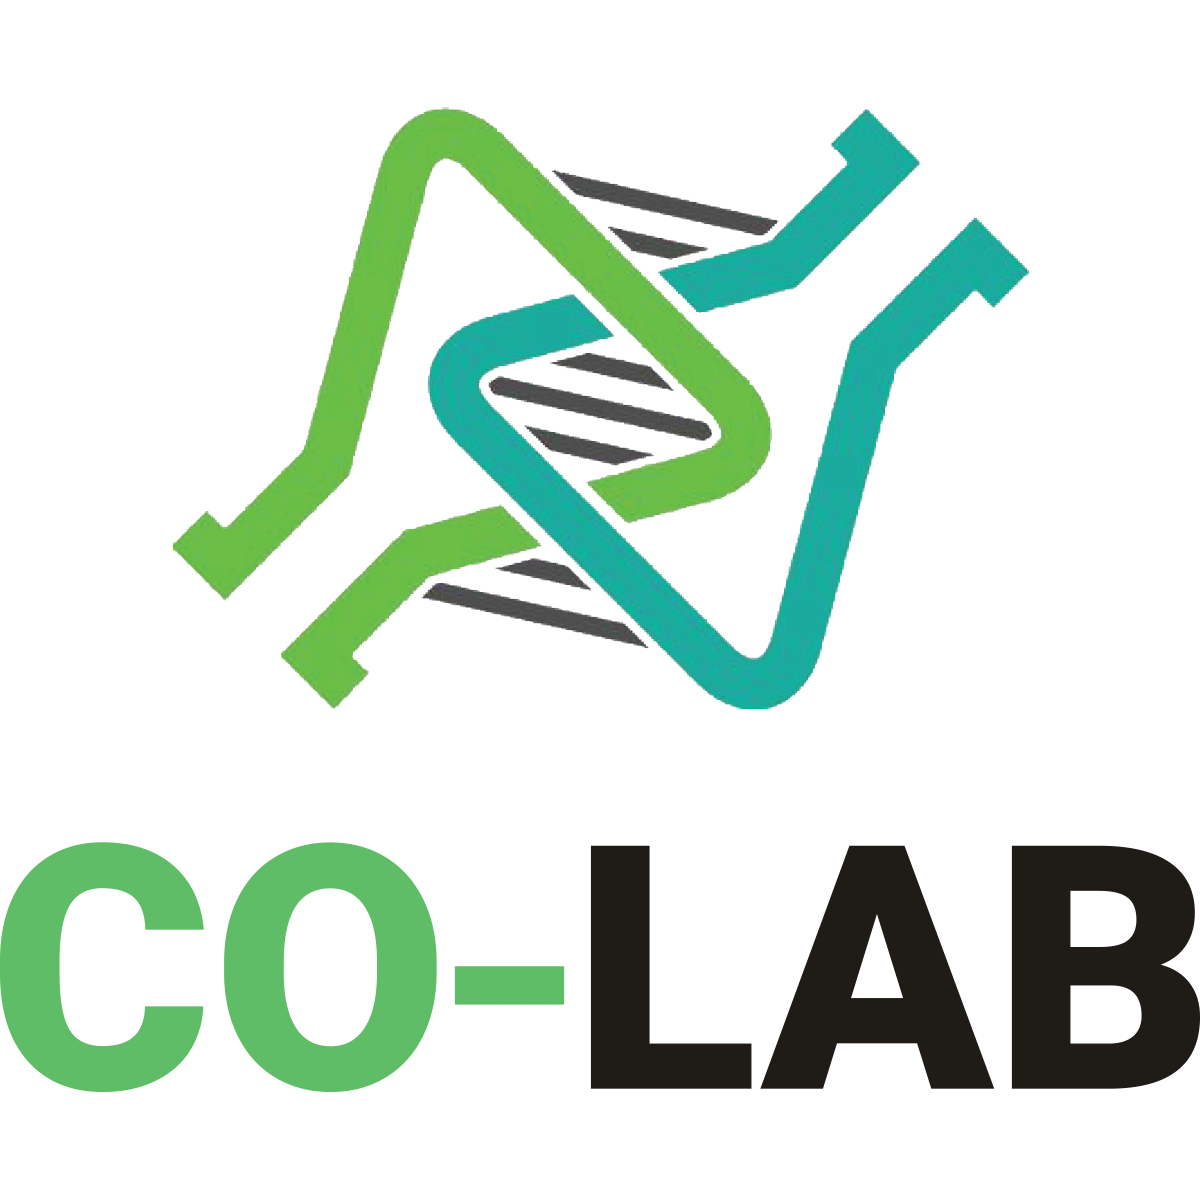 Co-lab